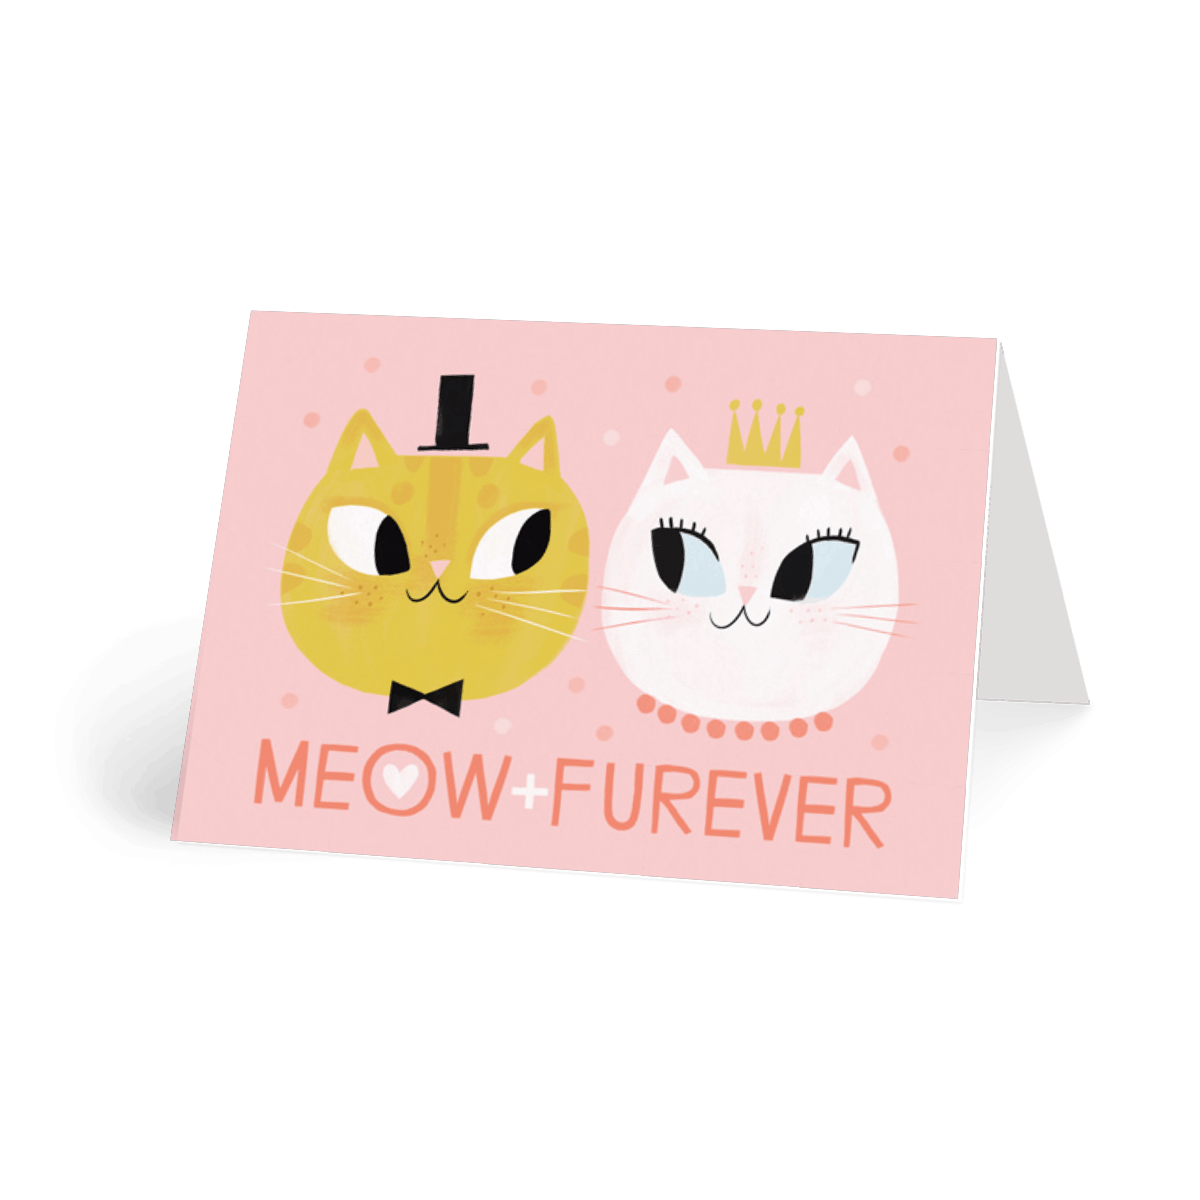 Meow + Furever